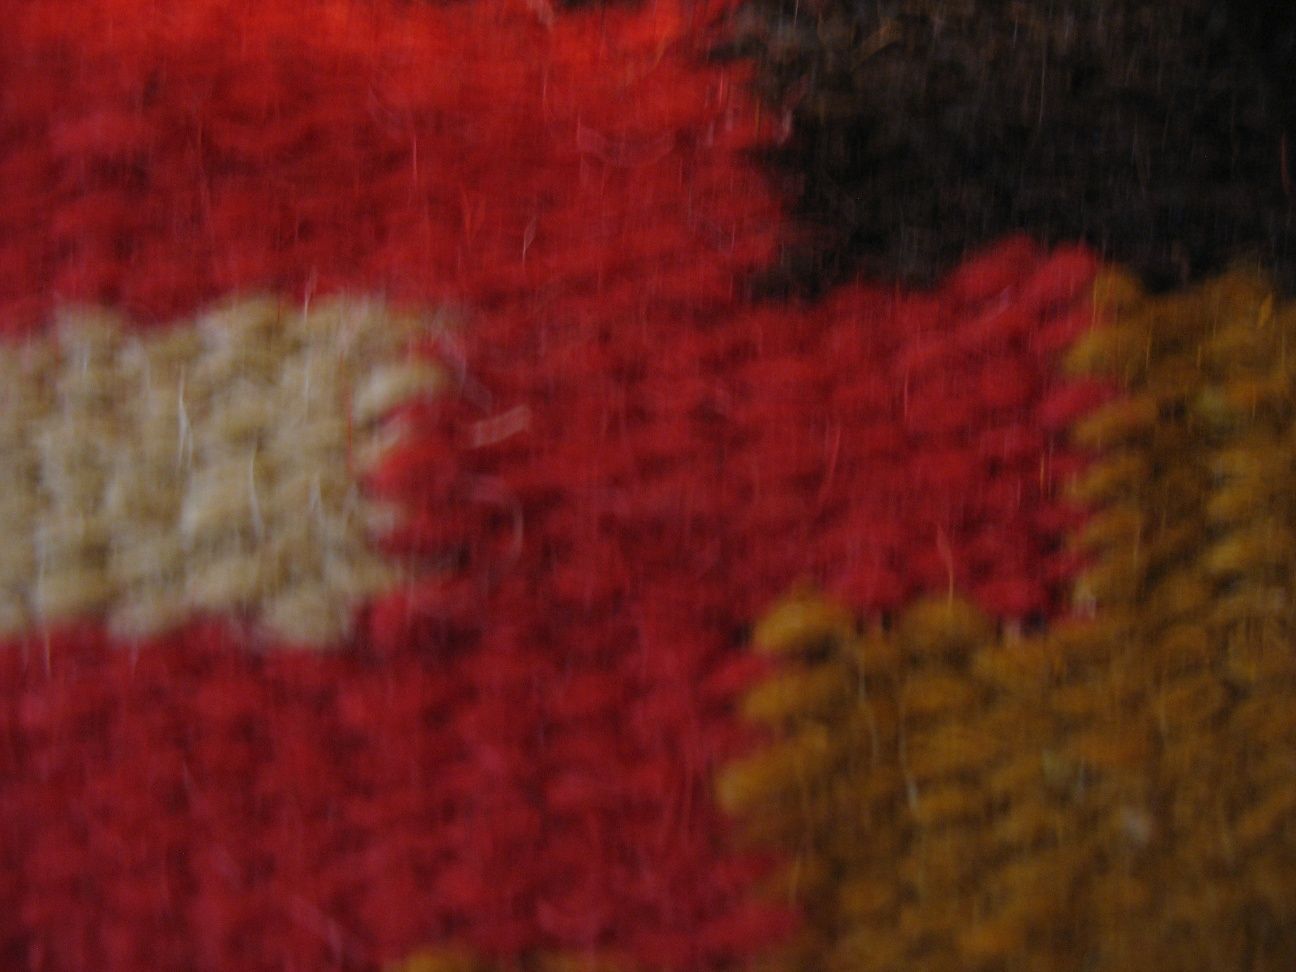 Cepelia wzór huculski kilim wełniany ręcznie tkany antyk